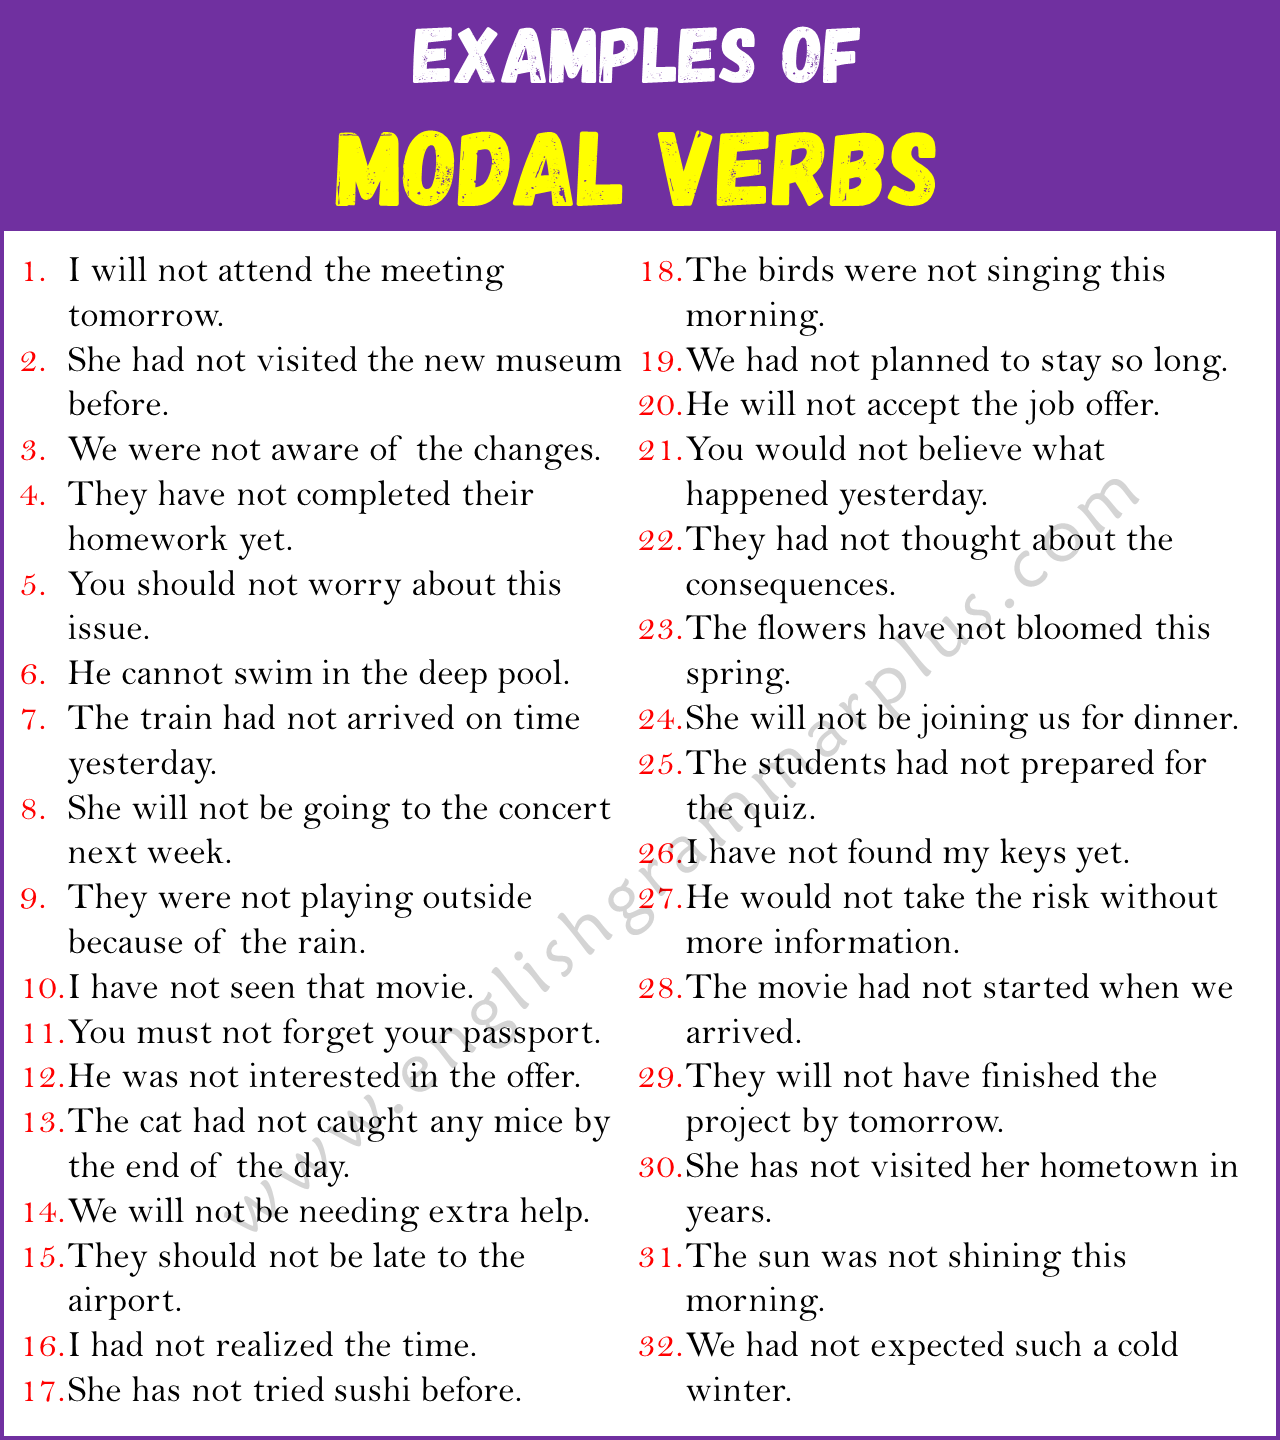 Example Sentences Using Modal Verbs